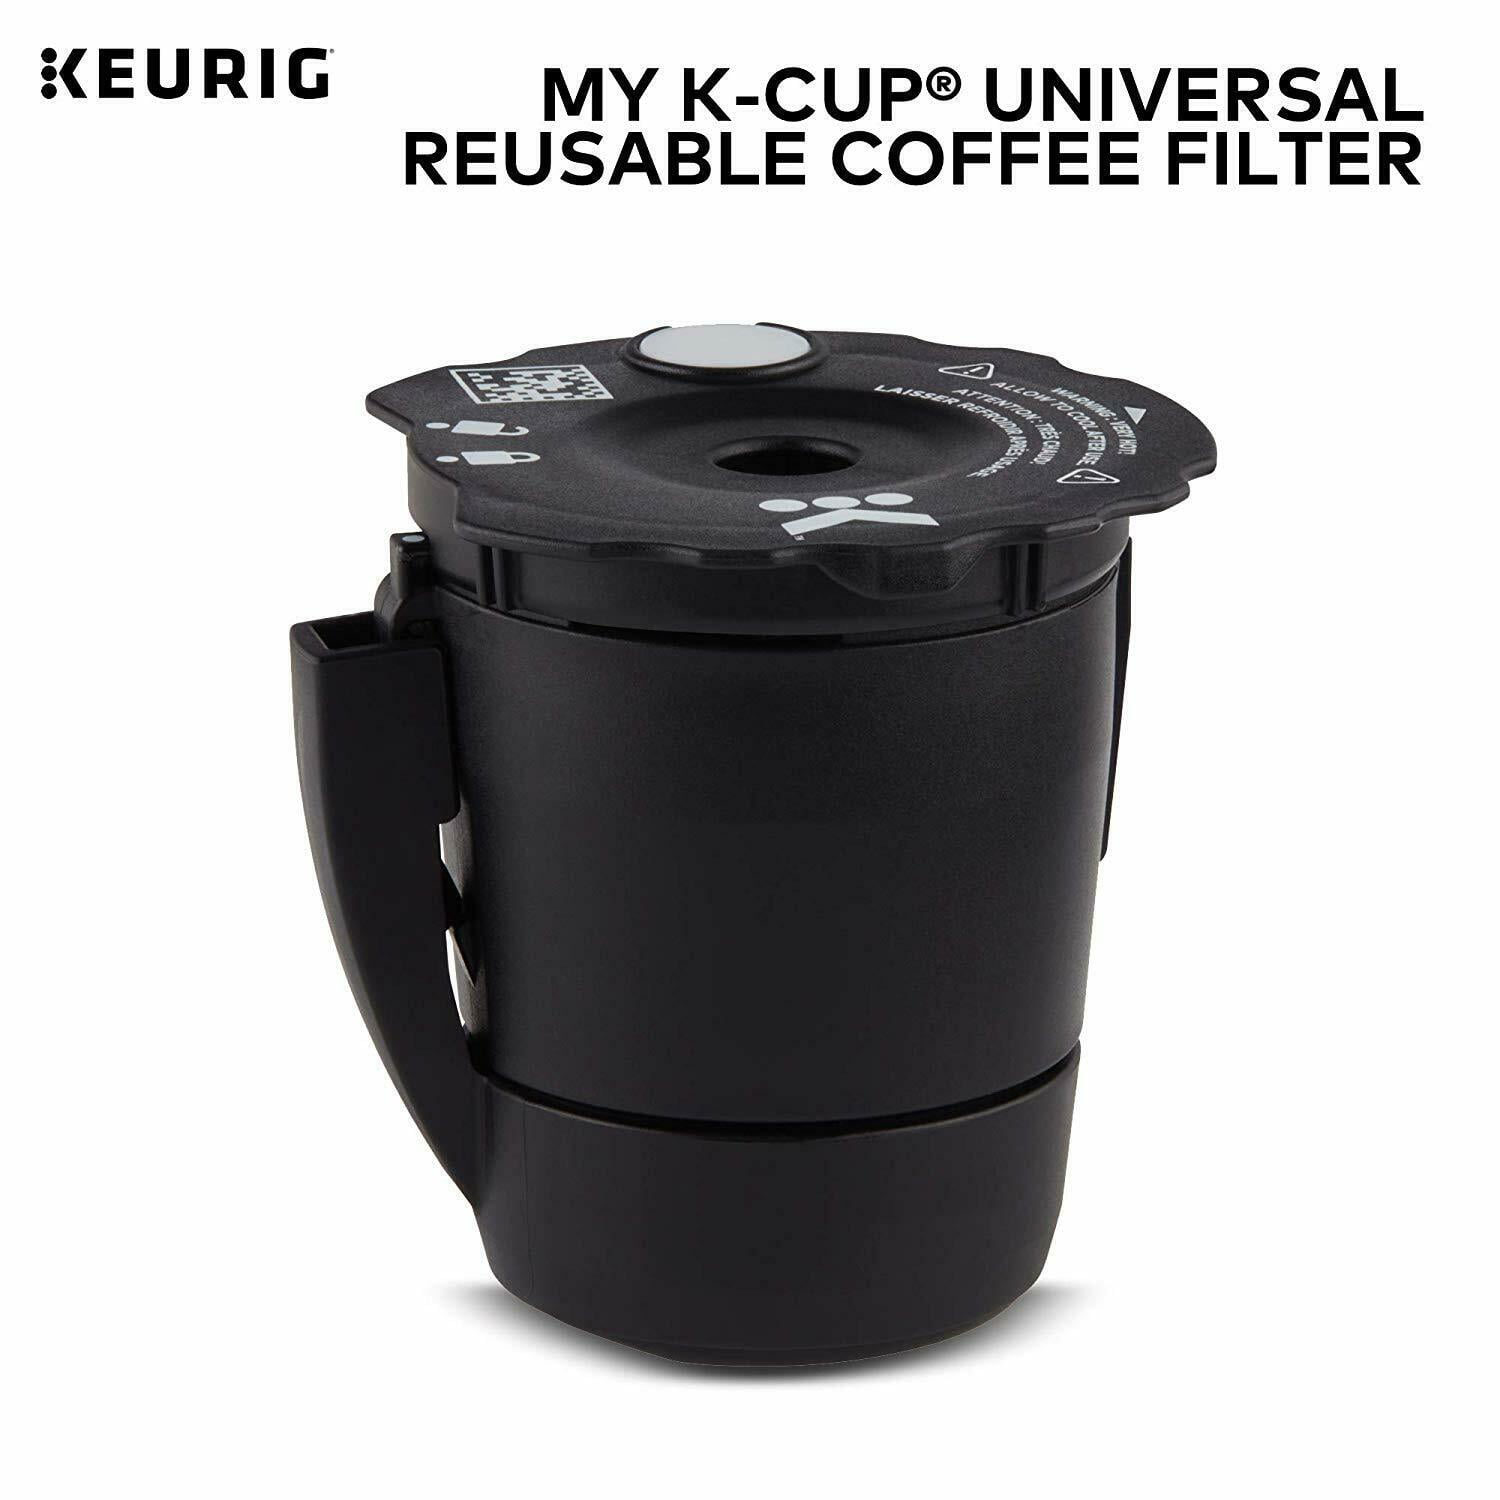 Keurig® Universal Reusable Coffee Filter My K-Cup®, 1 ct - Kroger